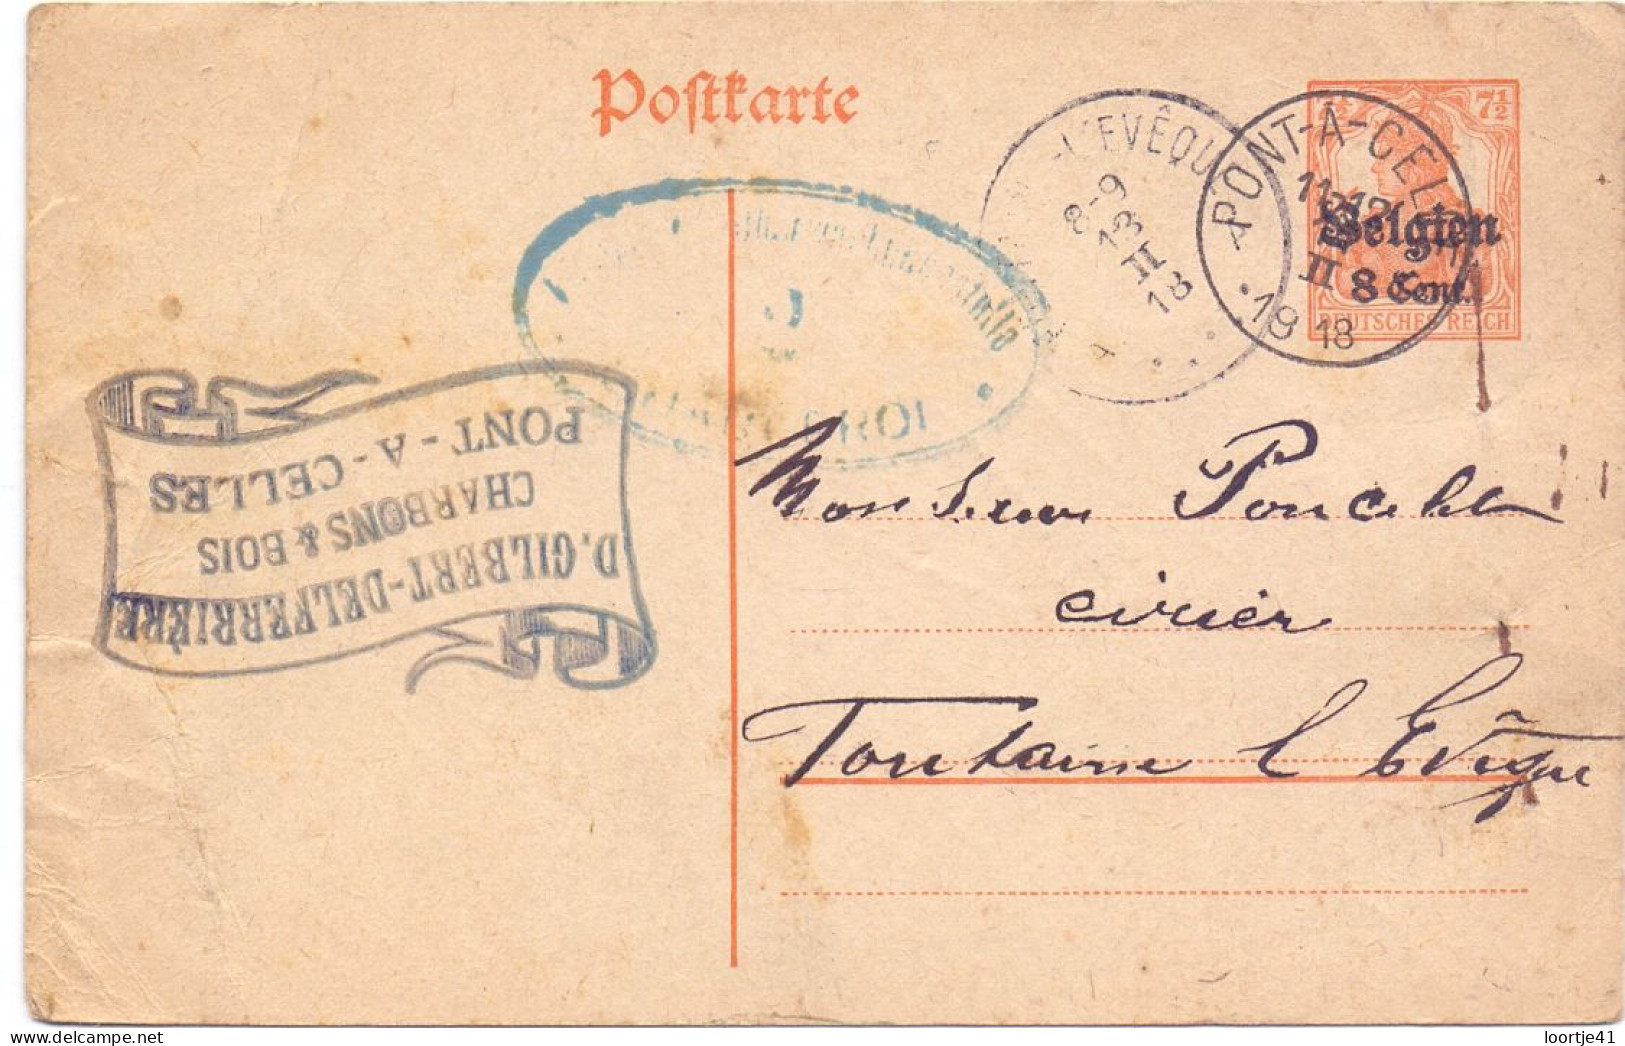 Briefkaart Carte Postale Postkarte Duitse Bezetting - Charbons Pont A Celles à Fontaine L'Eveque - 1918 - Duitse Bezetting